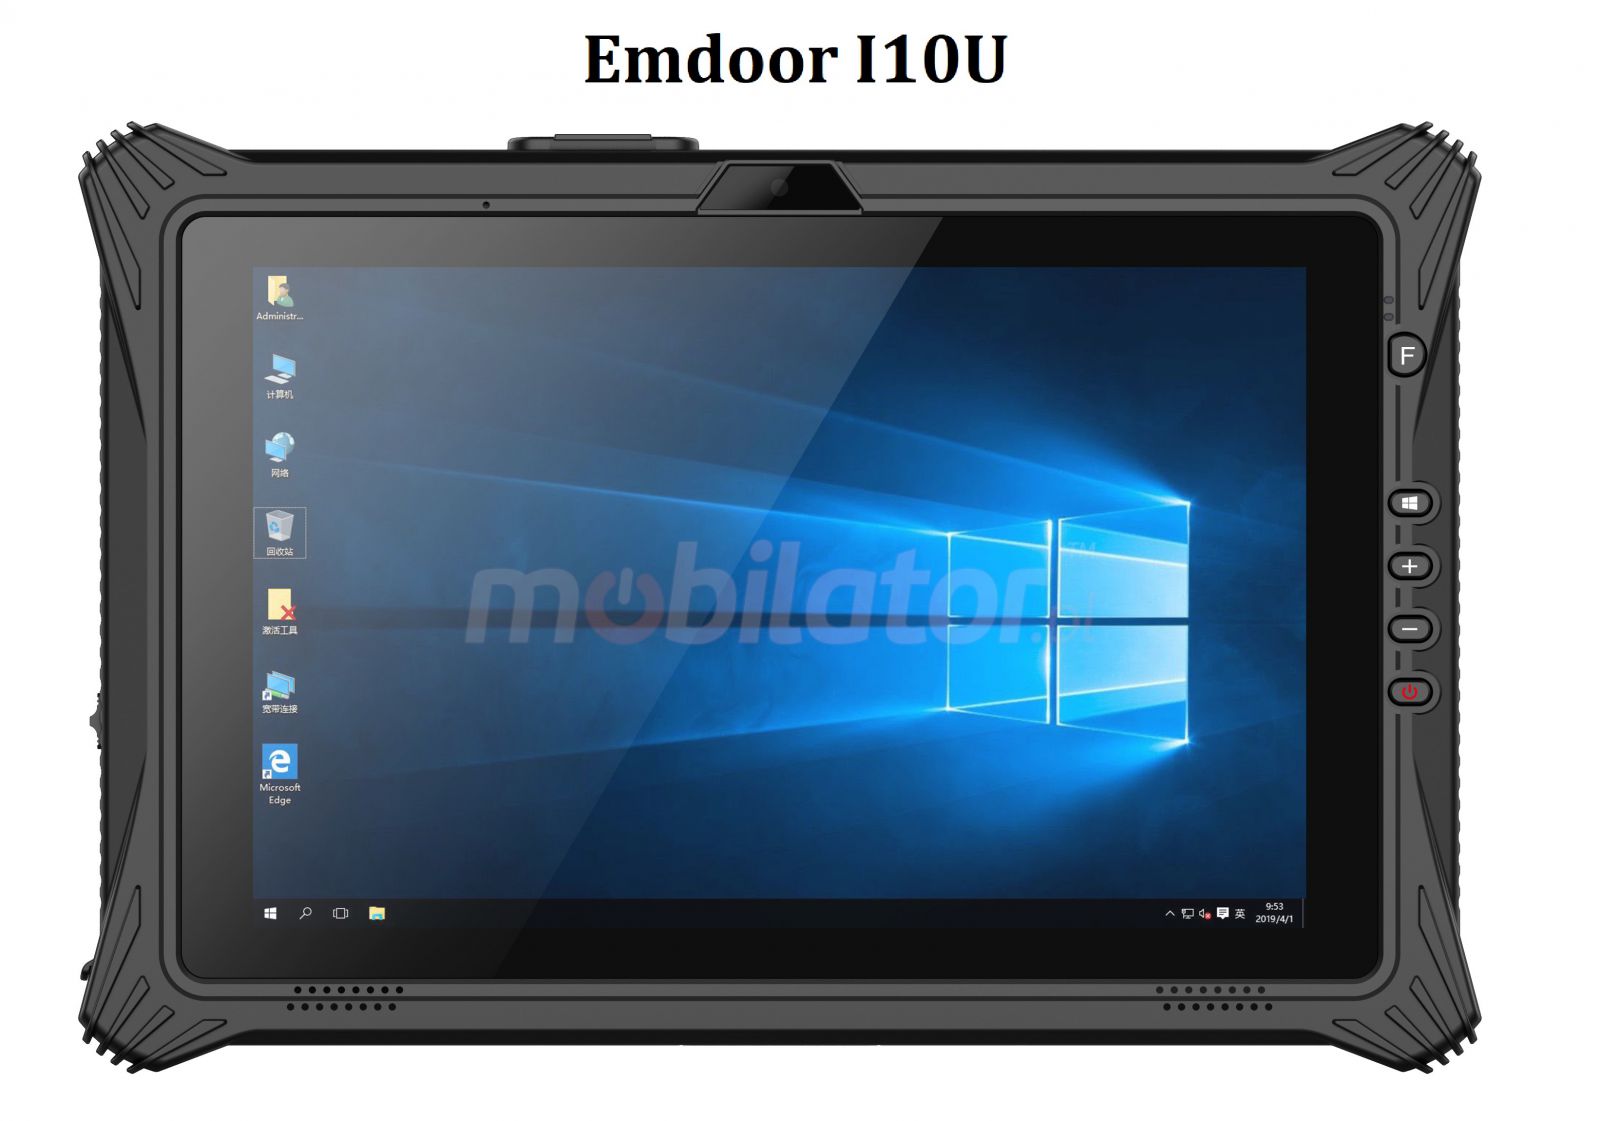 Emdoor I10U v.19 - Przemysowy 10-calowy tablet z procesorem i7, NFC, skanerem kodw kreskowych 1D MOTO, 16GB RAM i 512GB SSD, Windows 10 Home S, BT 4.2